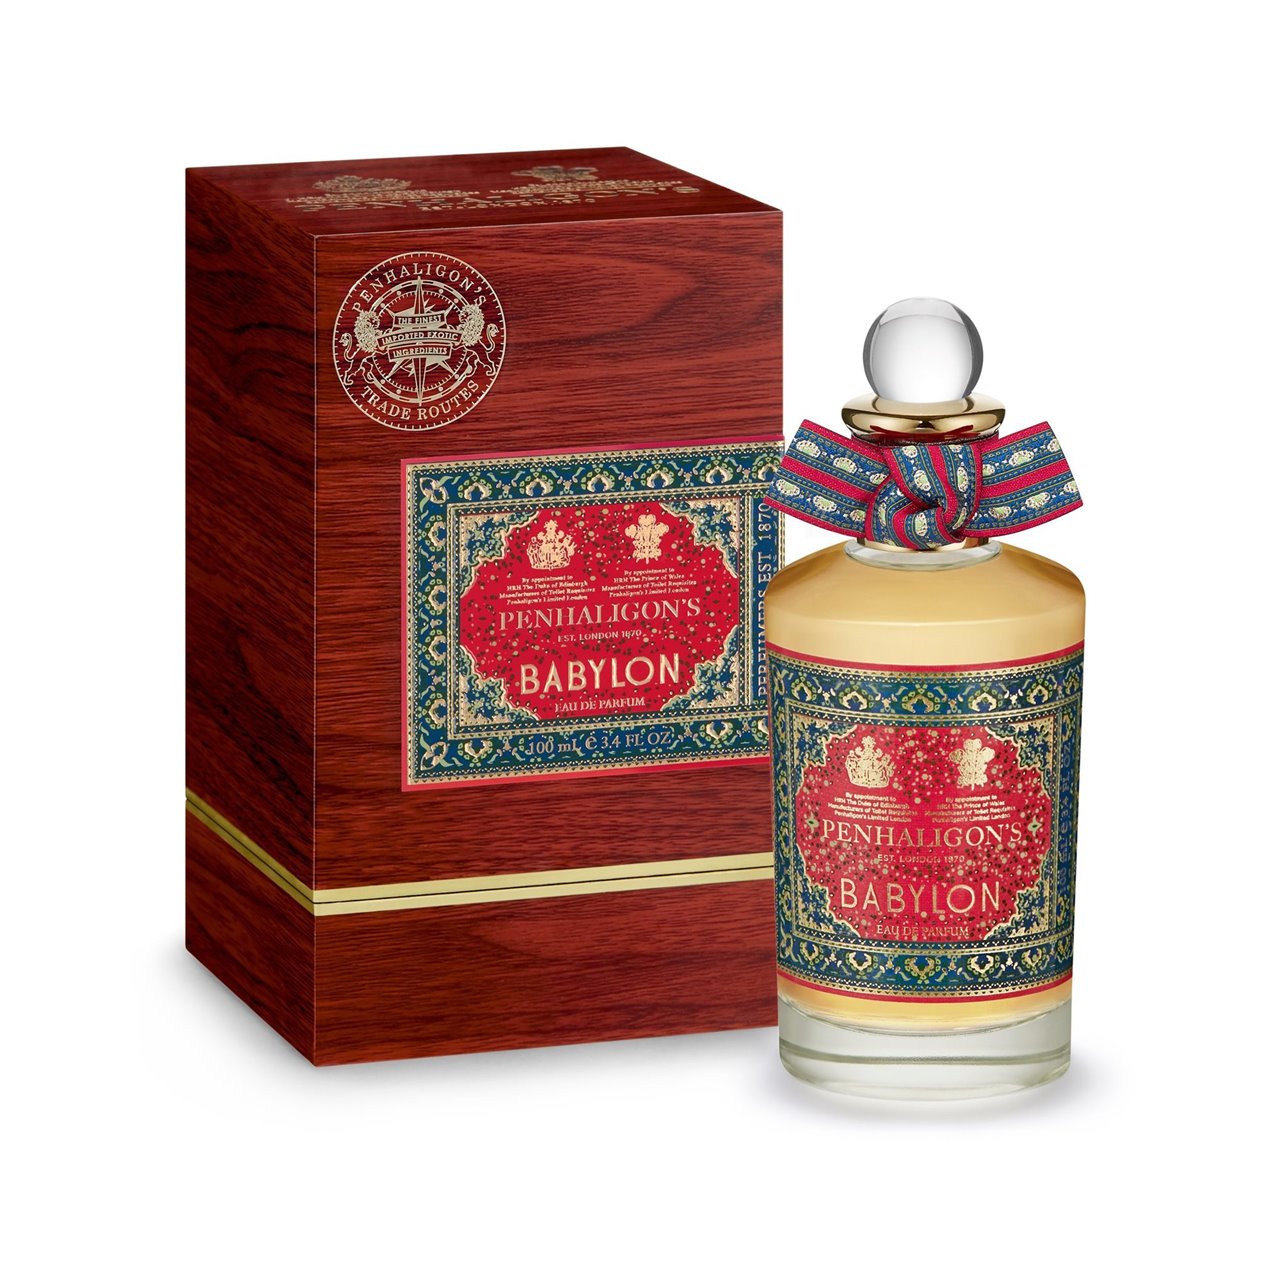  En el perfume, el adictivo aroma de la vainilla recuerda el tranquilizador olor de lo divino.